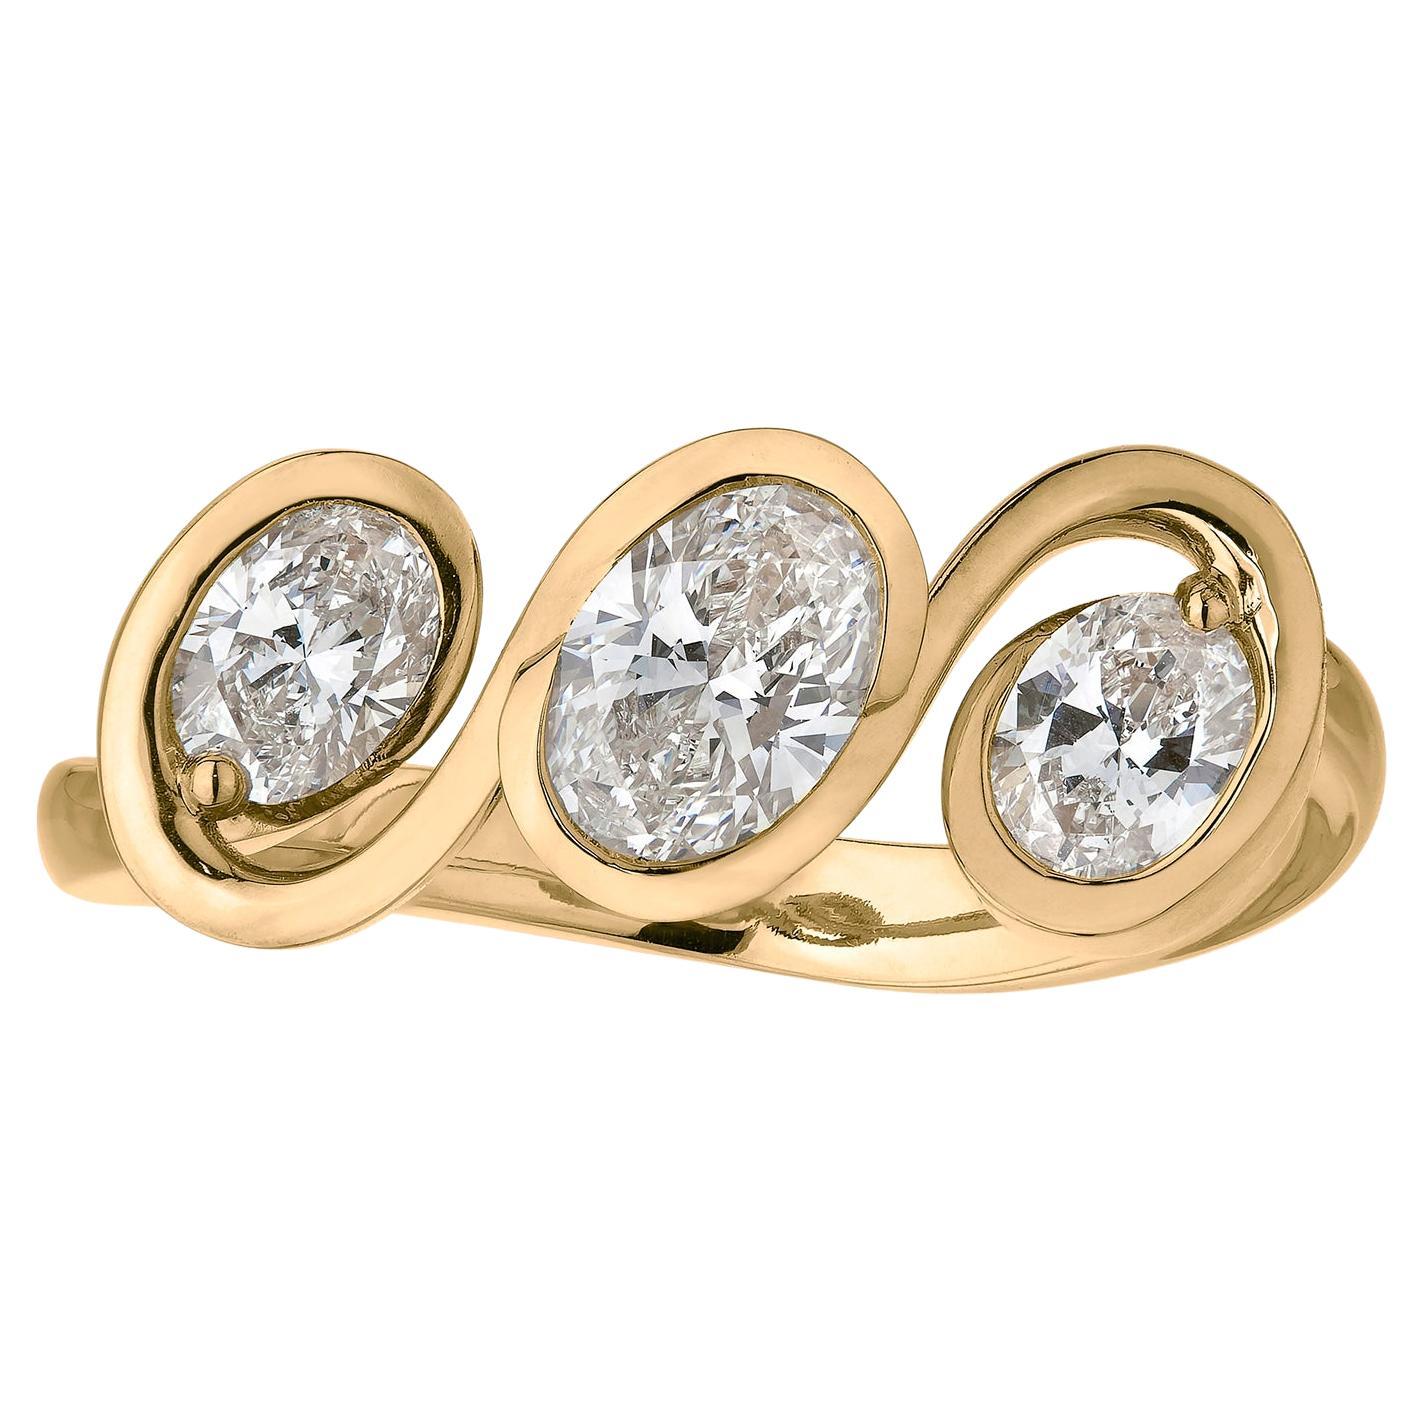 Handgefertigter Diamantring mit drei Steinen, 18 Karat Gelbgold